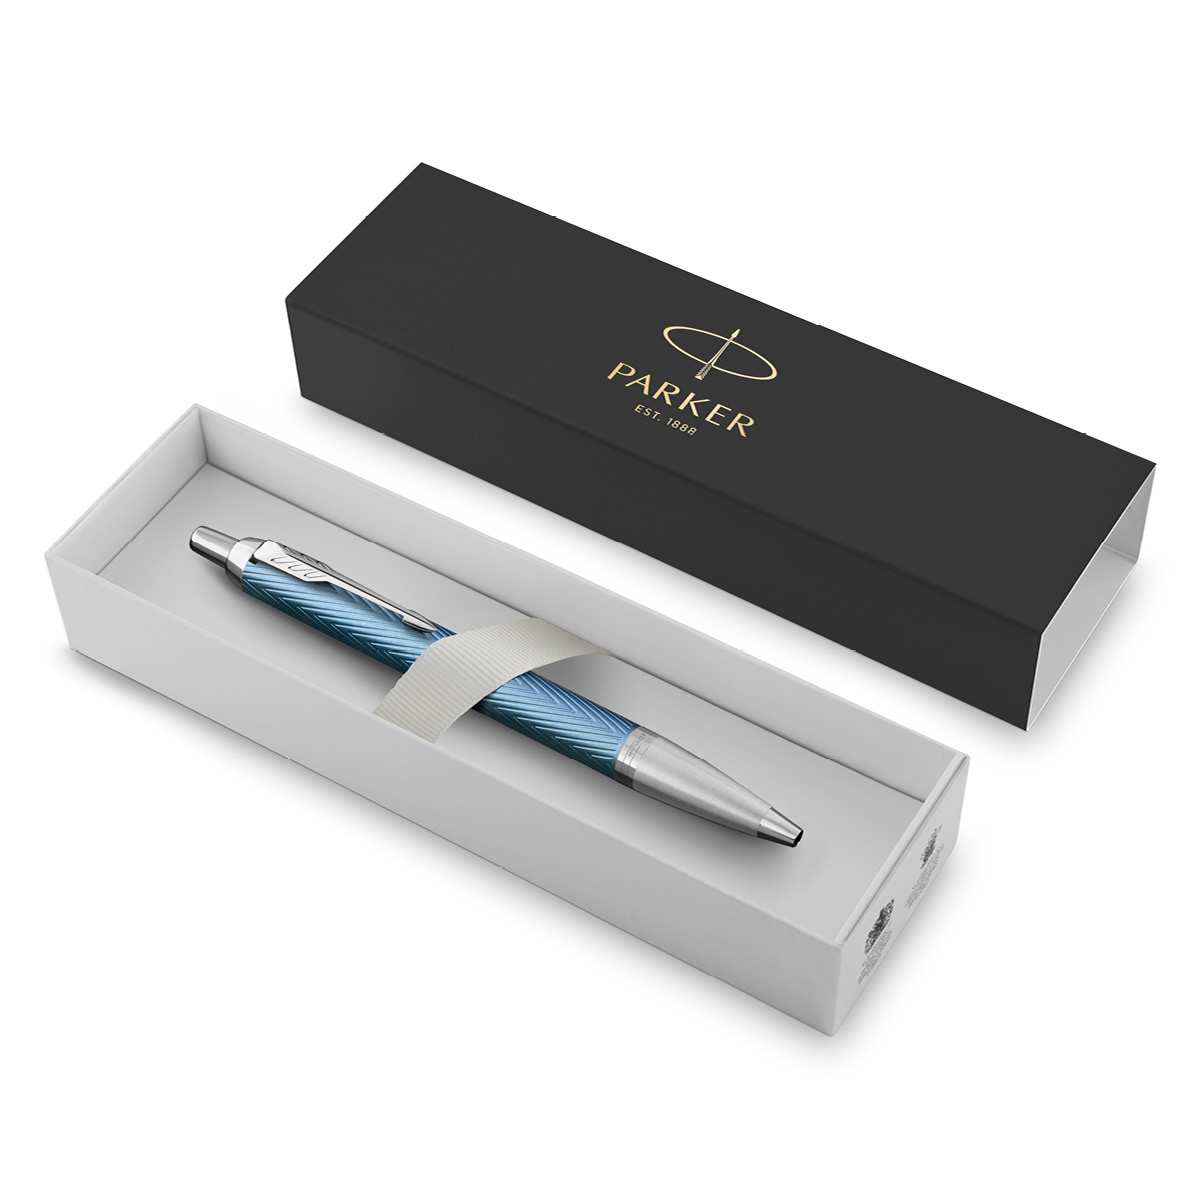 IM Premium Blue/Grey Kulspetspenna i gruppen Pennor / Fine Writing / Kulspetspennor hos Pen Store (112694)